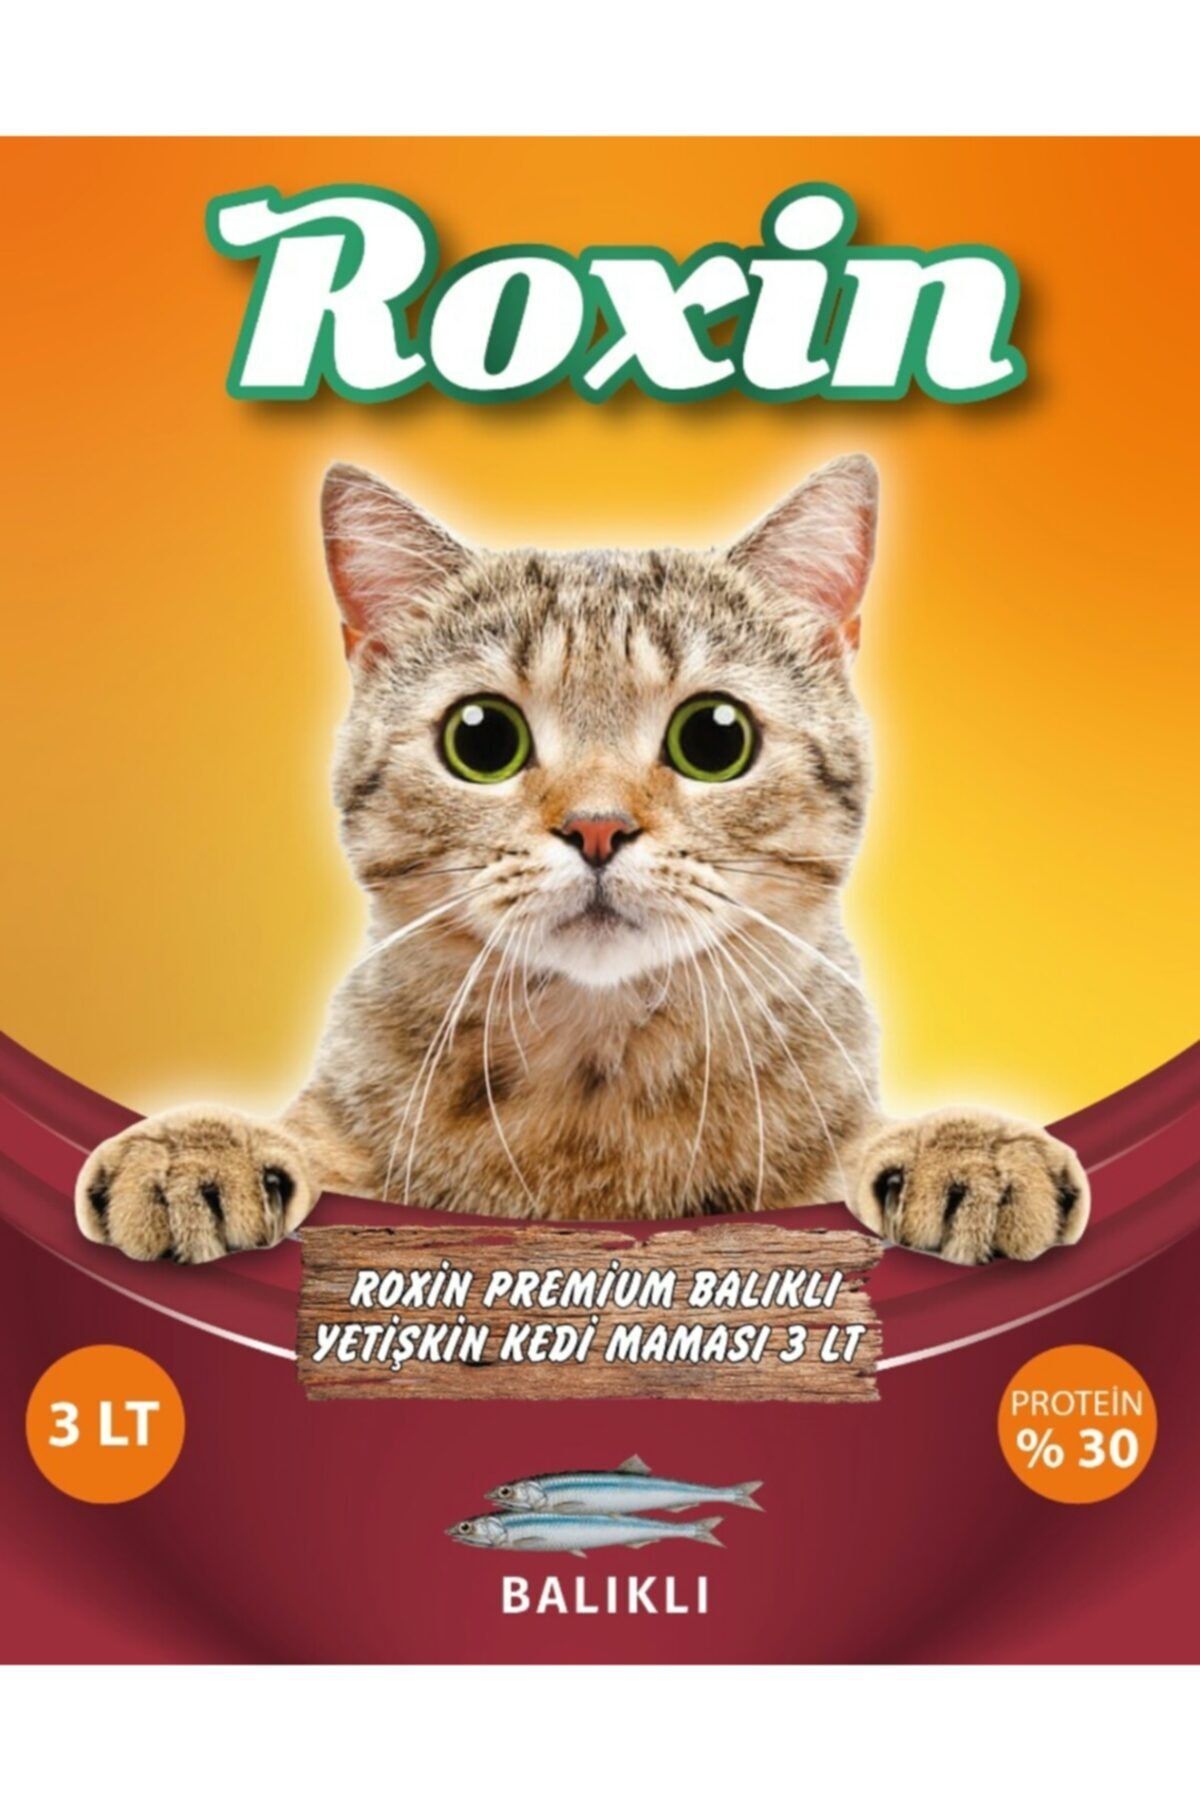 Roxin Premium Balıklı Yetişkin Kedi Maması 3 lt